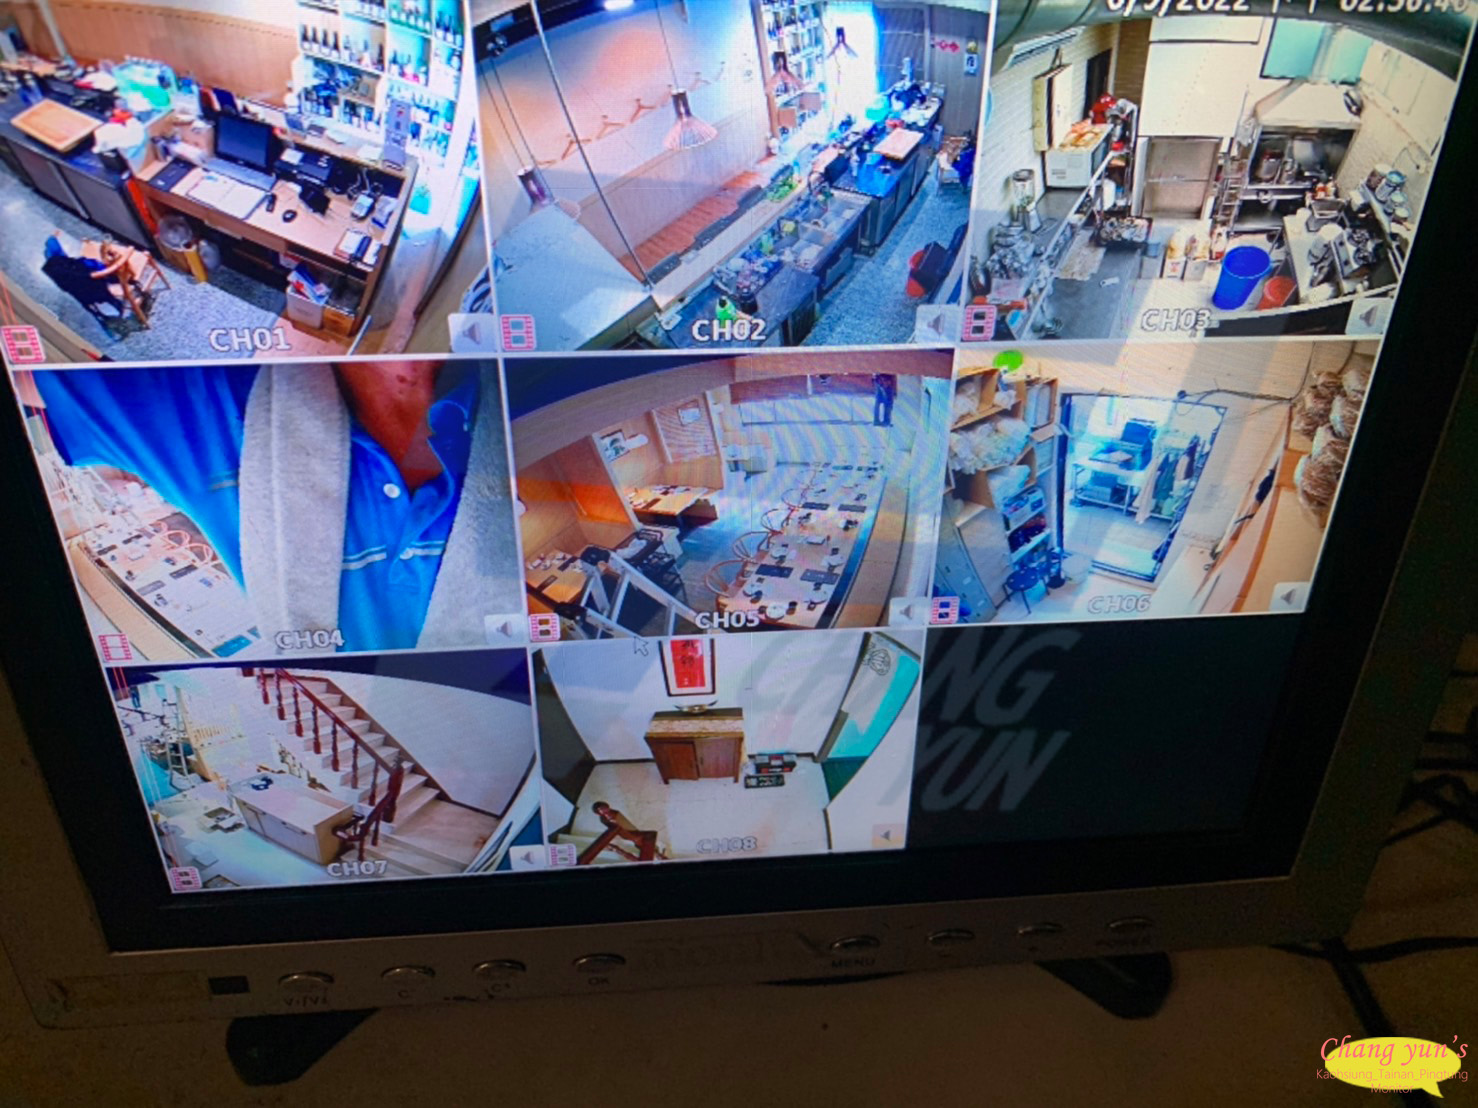 高雄市鼓山區監視器安裝案例 監視系統推薦安裝廠商